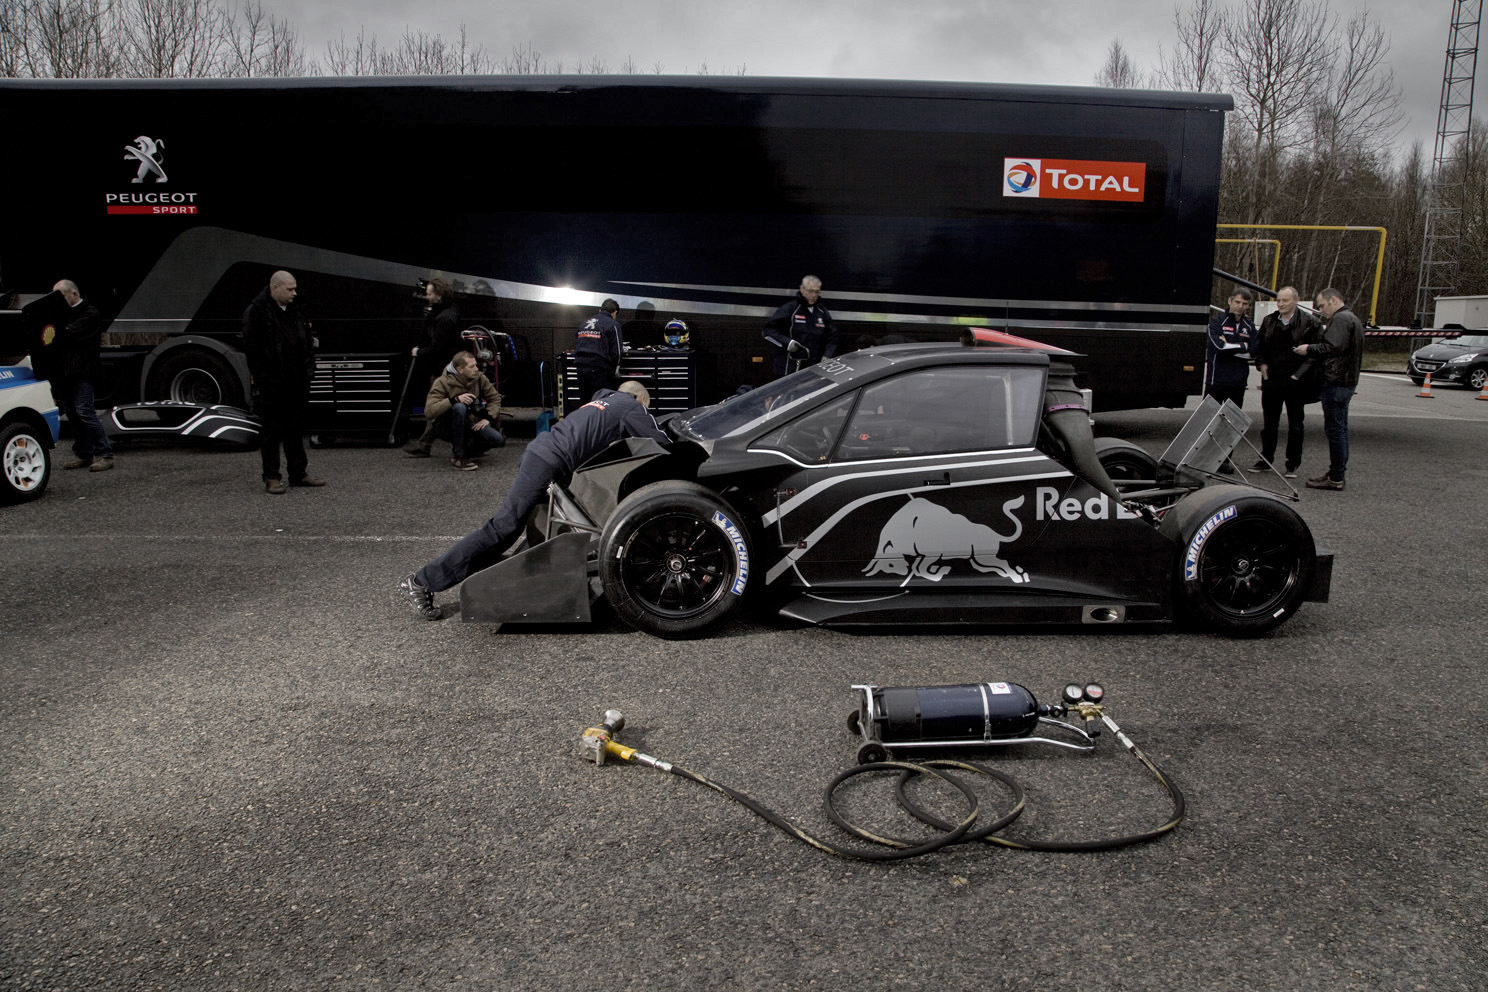 Sebastien Loeb's record breaking Red Bull, Peugeot 208, Pikes Peak racing car